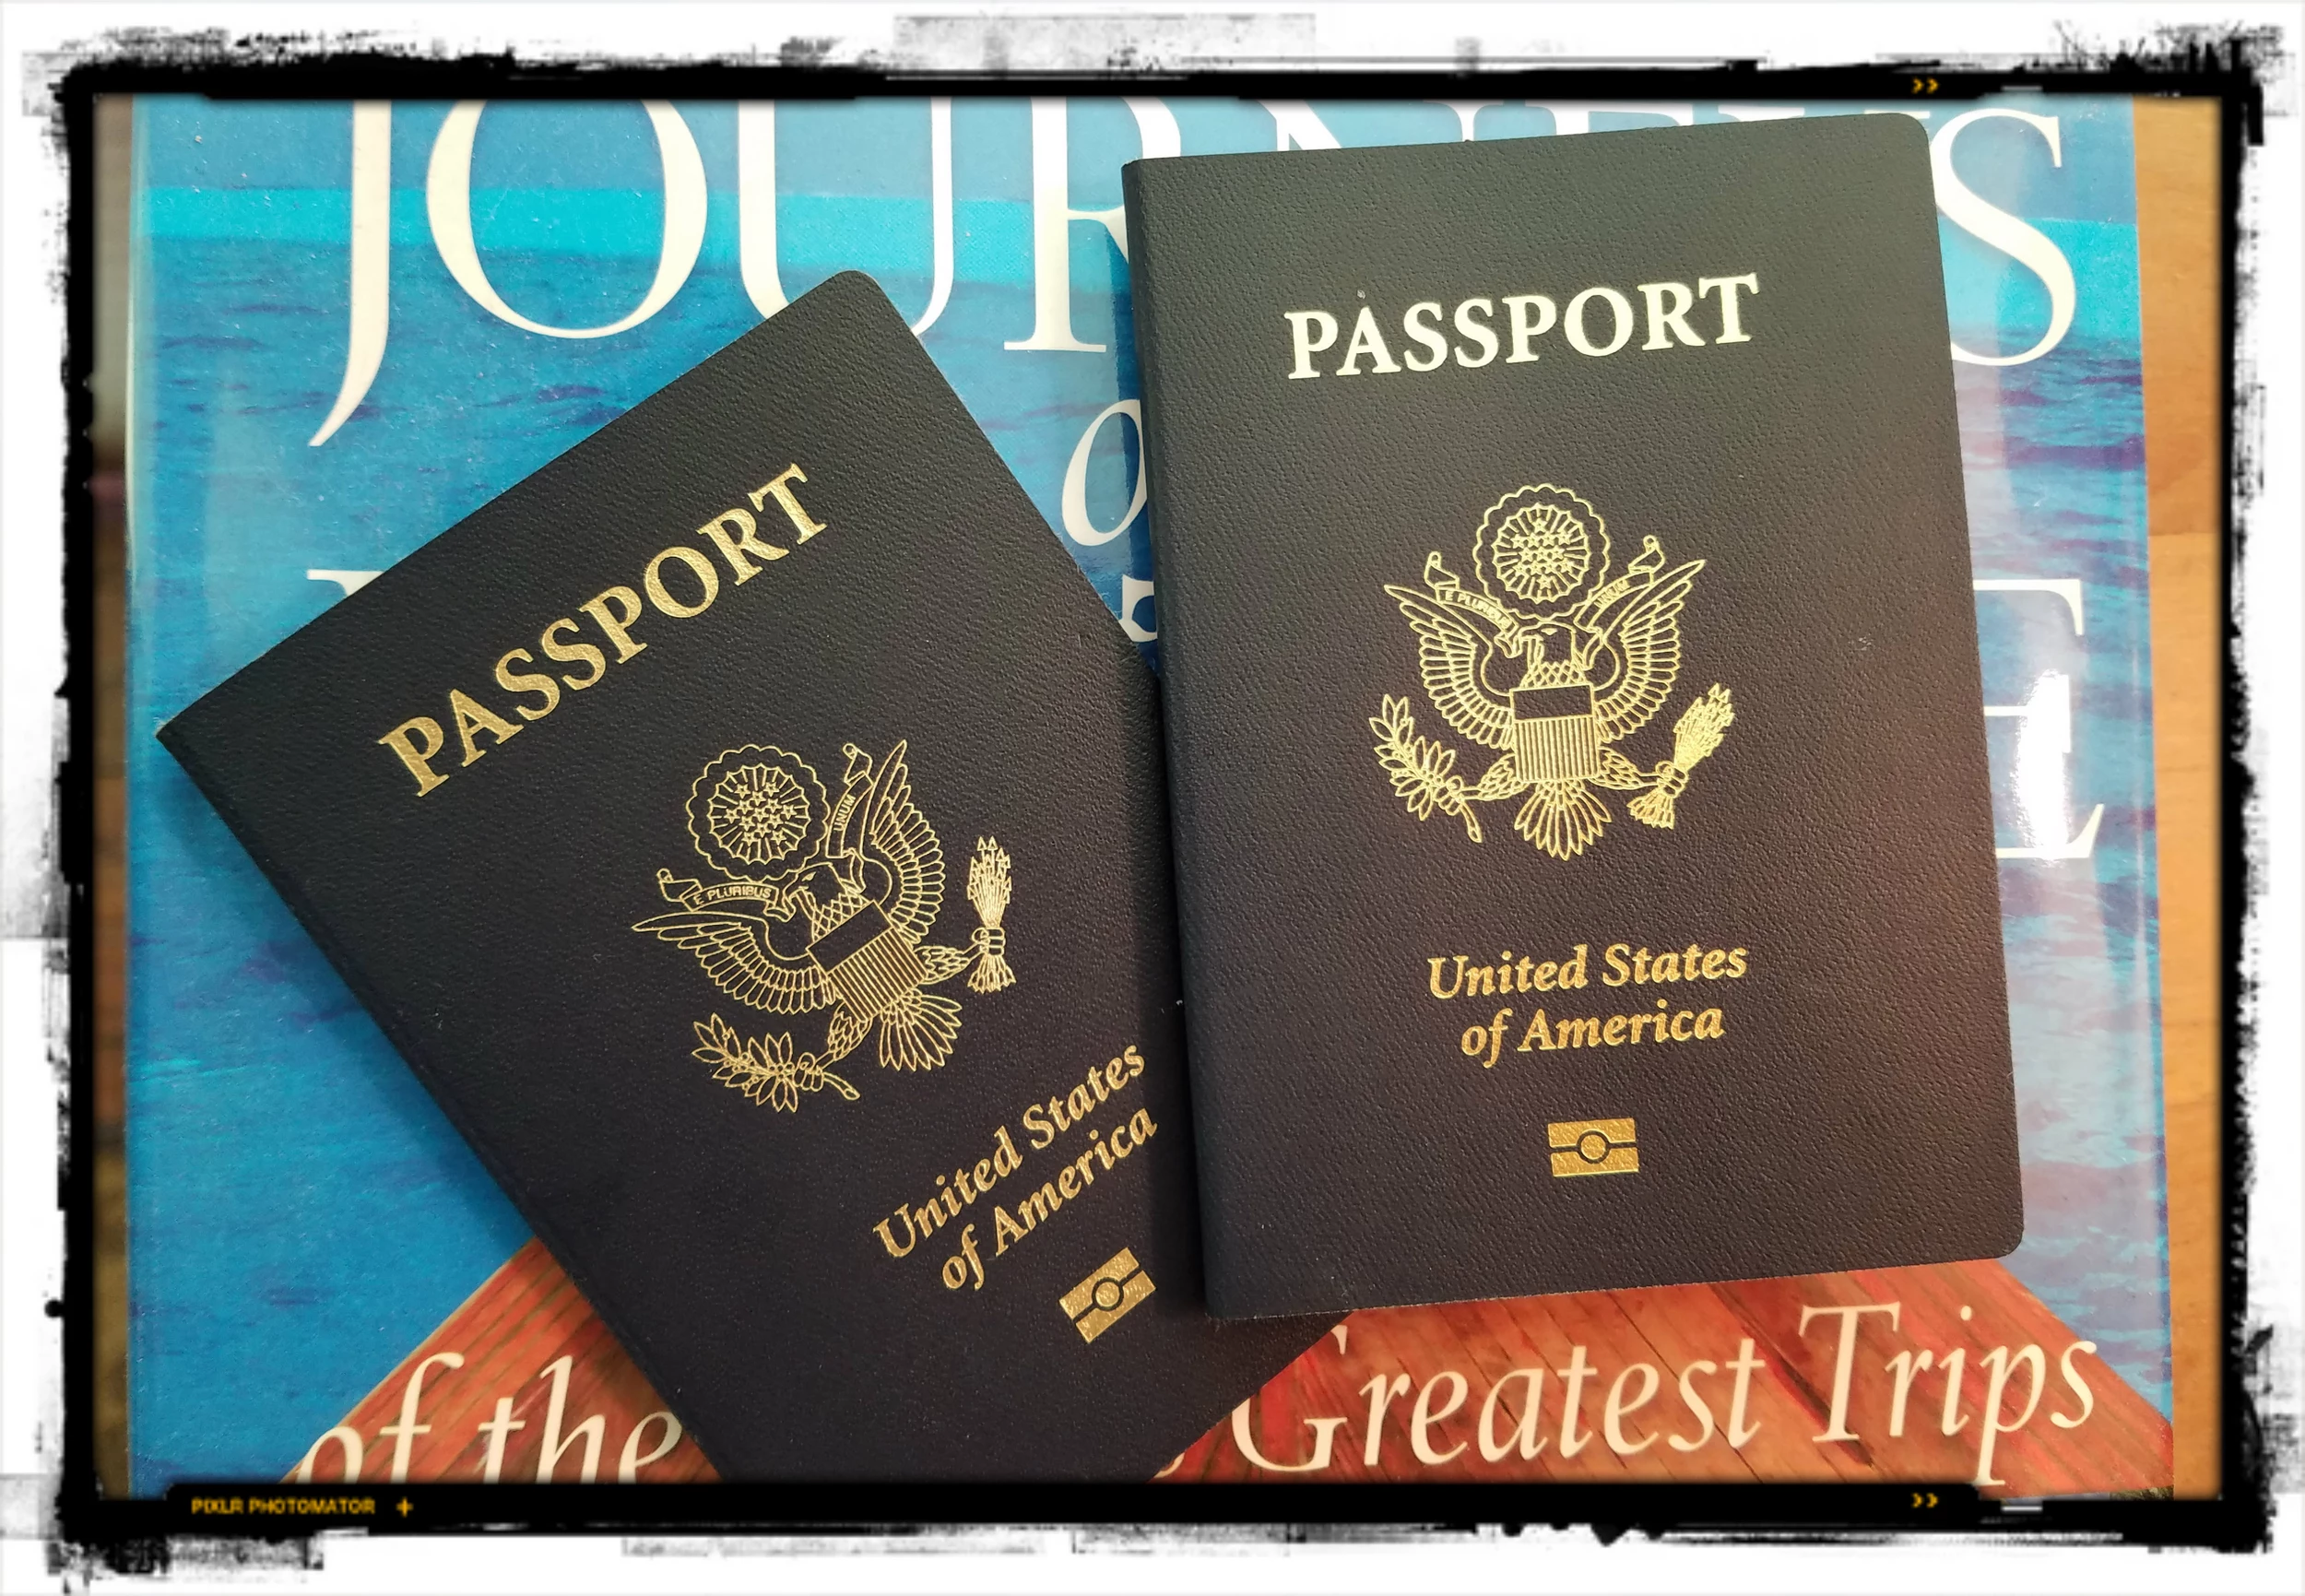 lovenn vip passport newport news